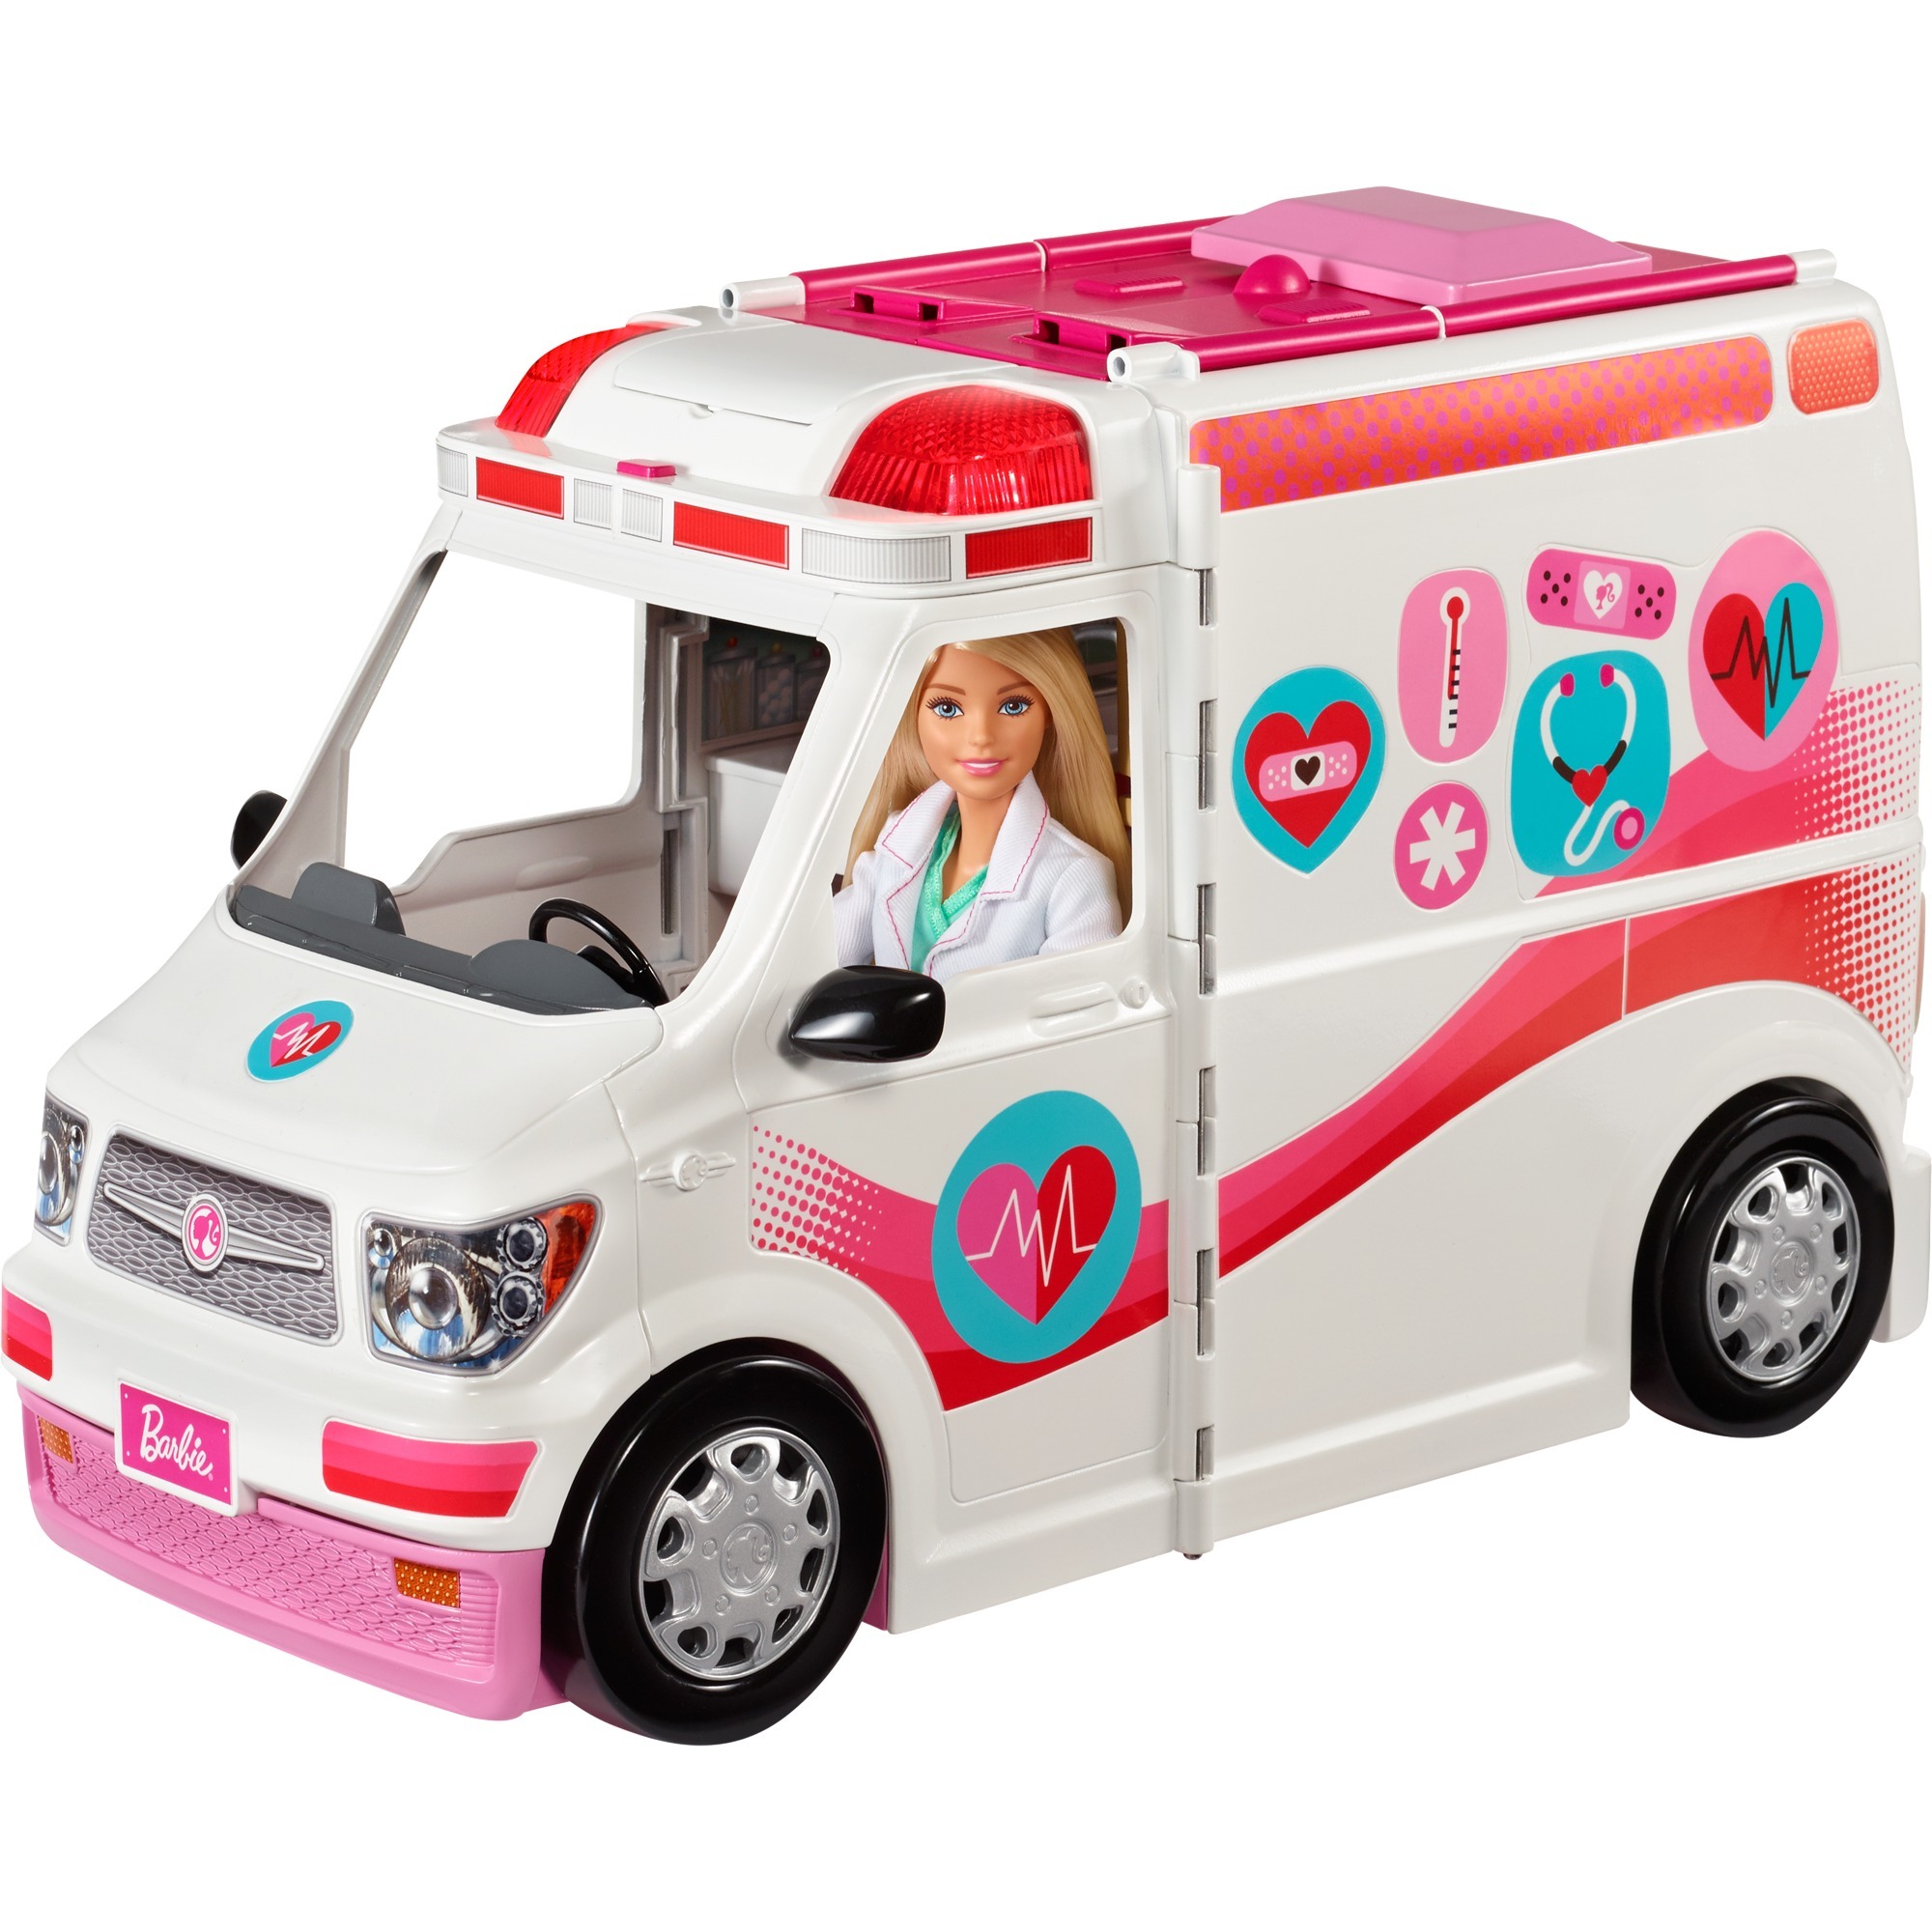 Image of Alternate - Barbie 2-in-1 Krankenwagen Spielset (mit Licht & Geräuschen), Spielfahrzeug online einkaufen bei Alternate